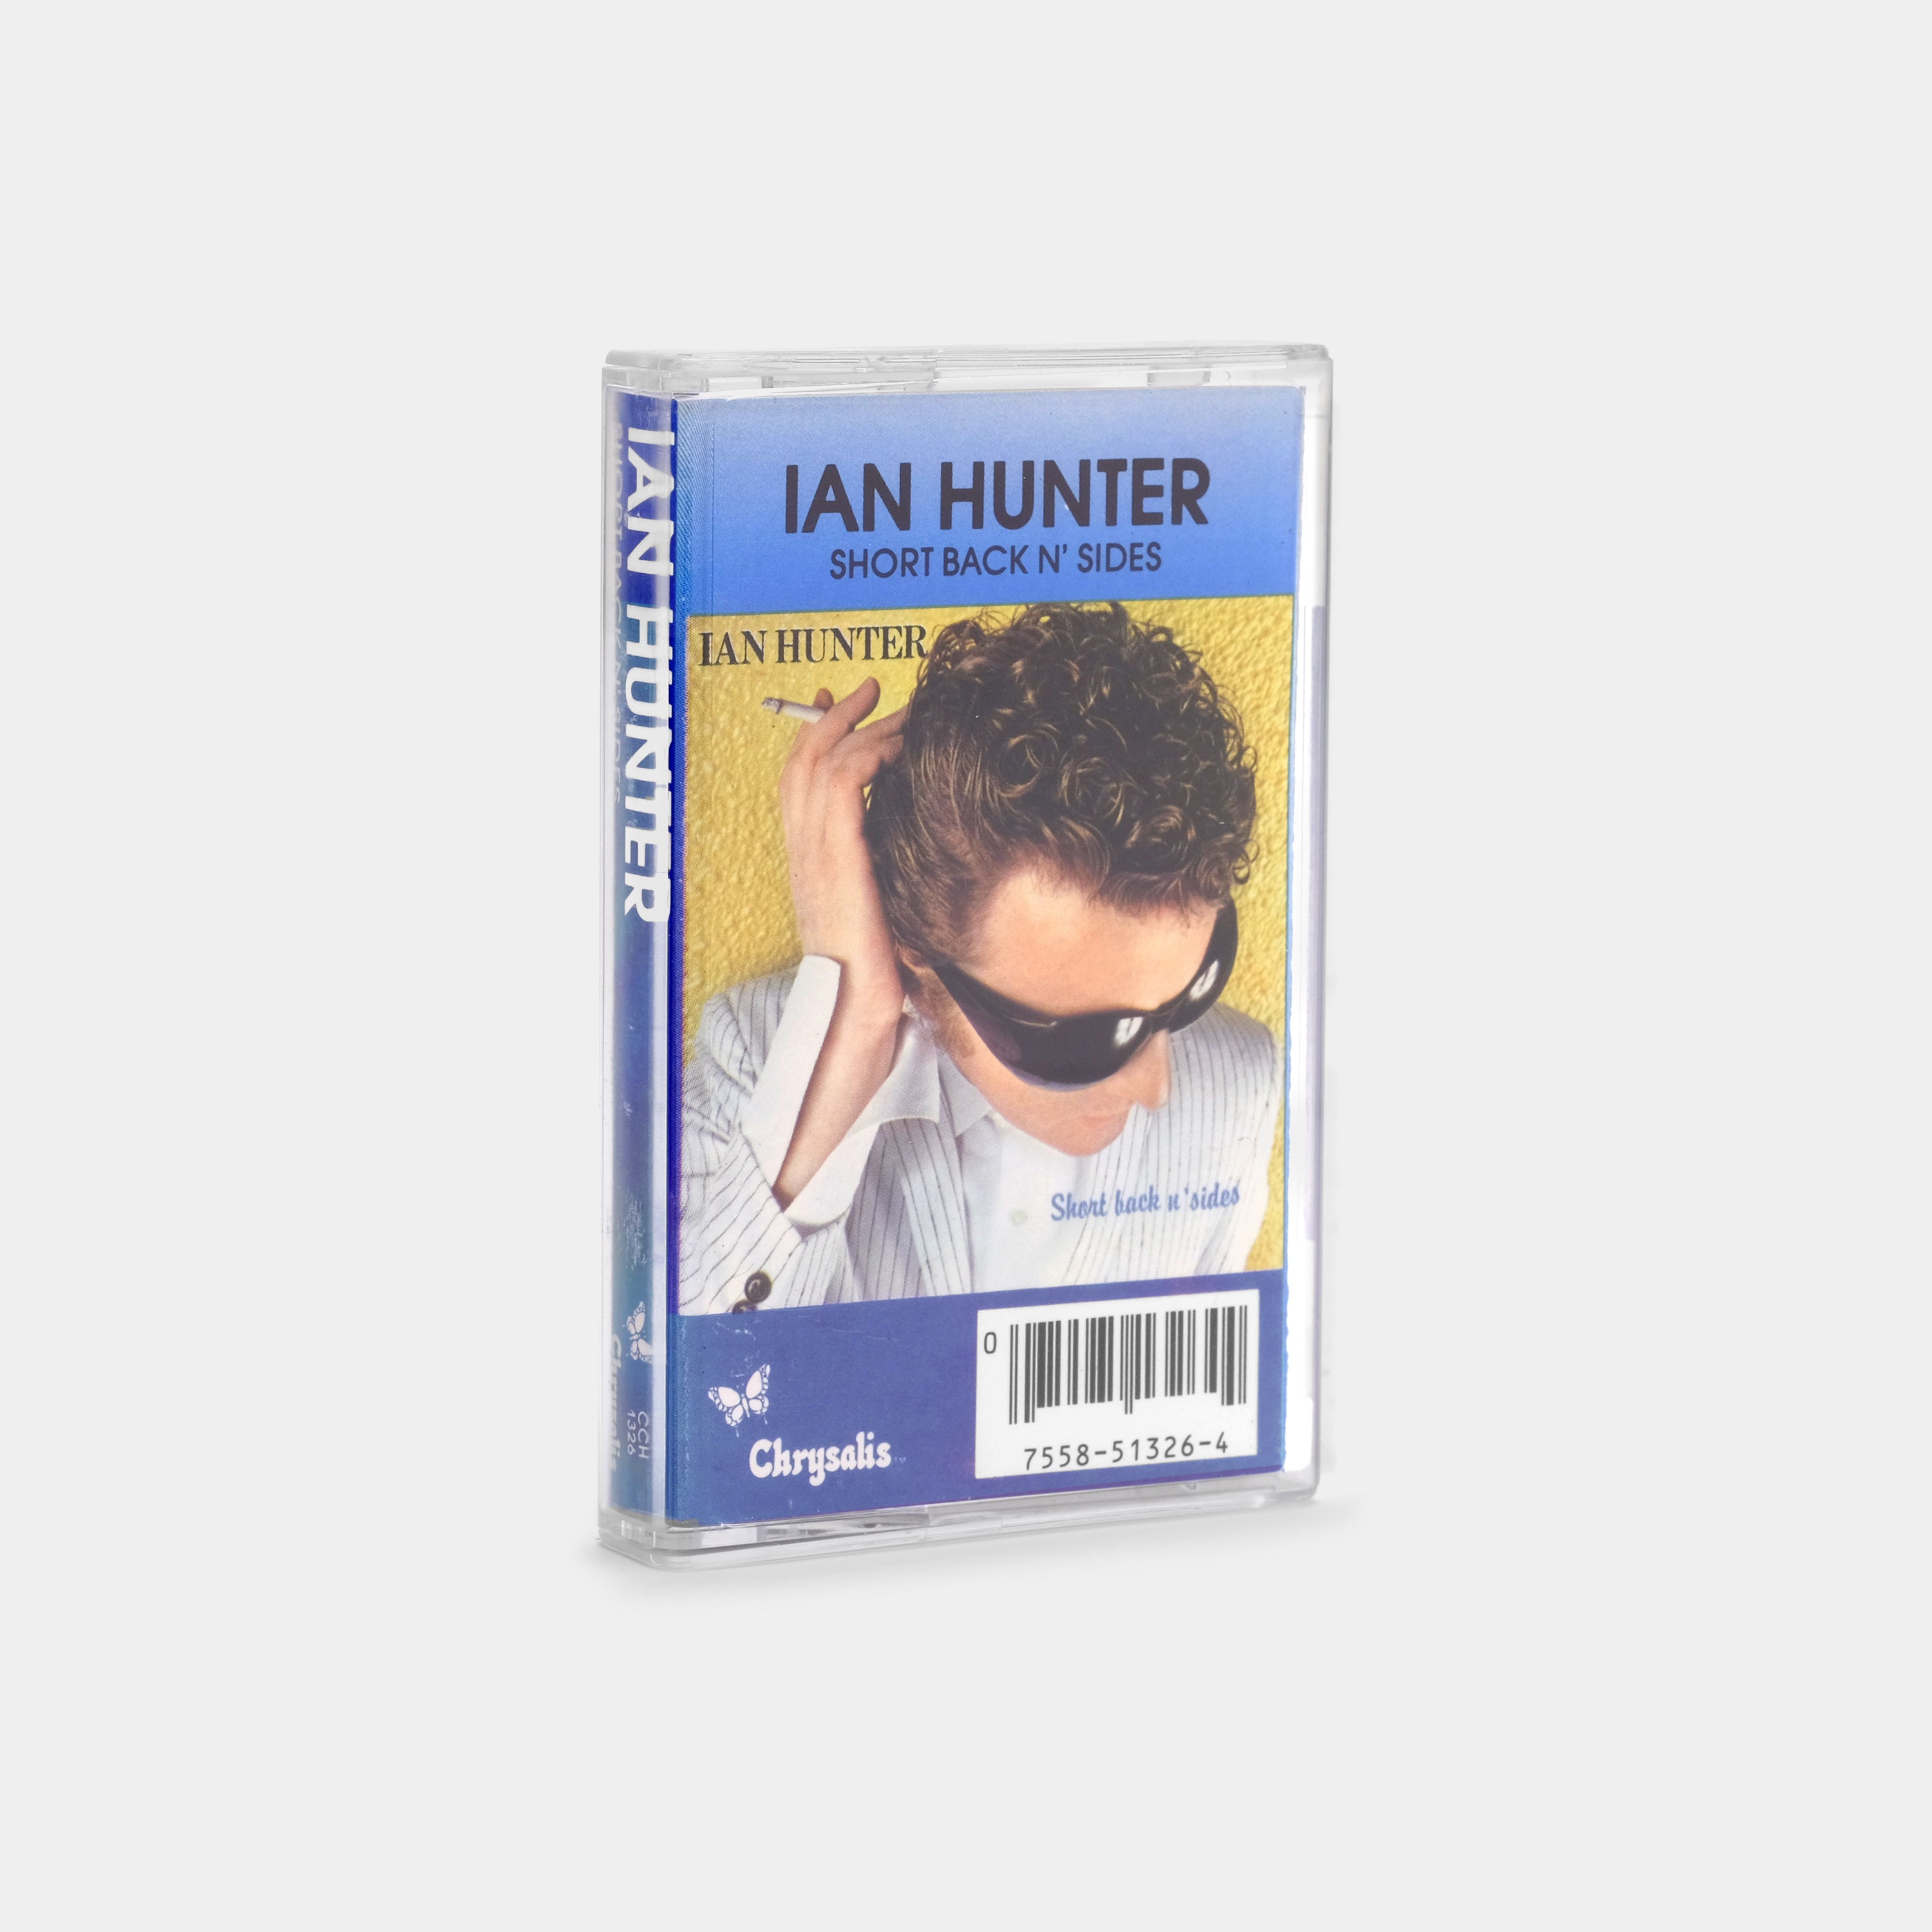 Ian Hunter - Short Back N' Sides Cassette Tape